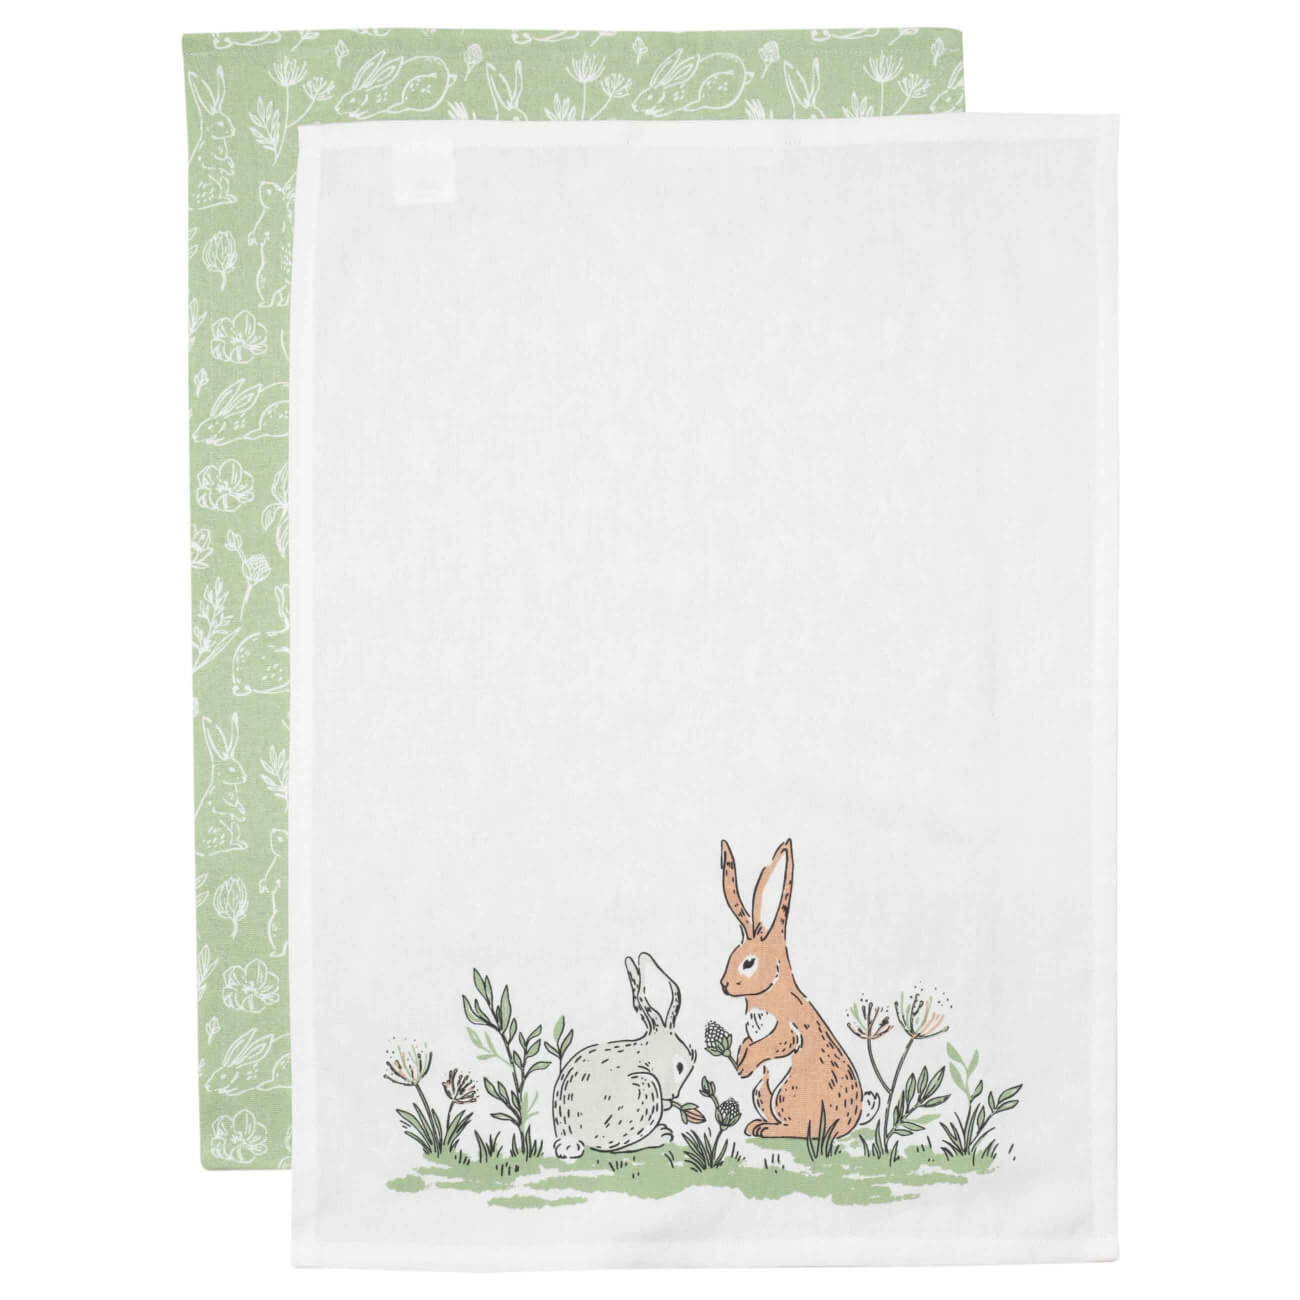 полотенце кухонное 40x60 см хлопок белое кролик natural easter Полотенце кухонное, 40х60 см, 2 шт, хлопок, белое/зеленое, Кролики, Easter